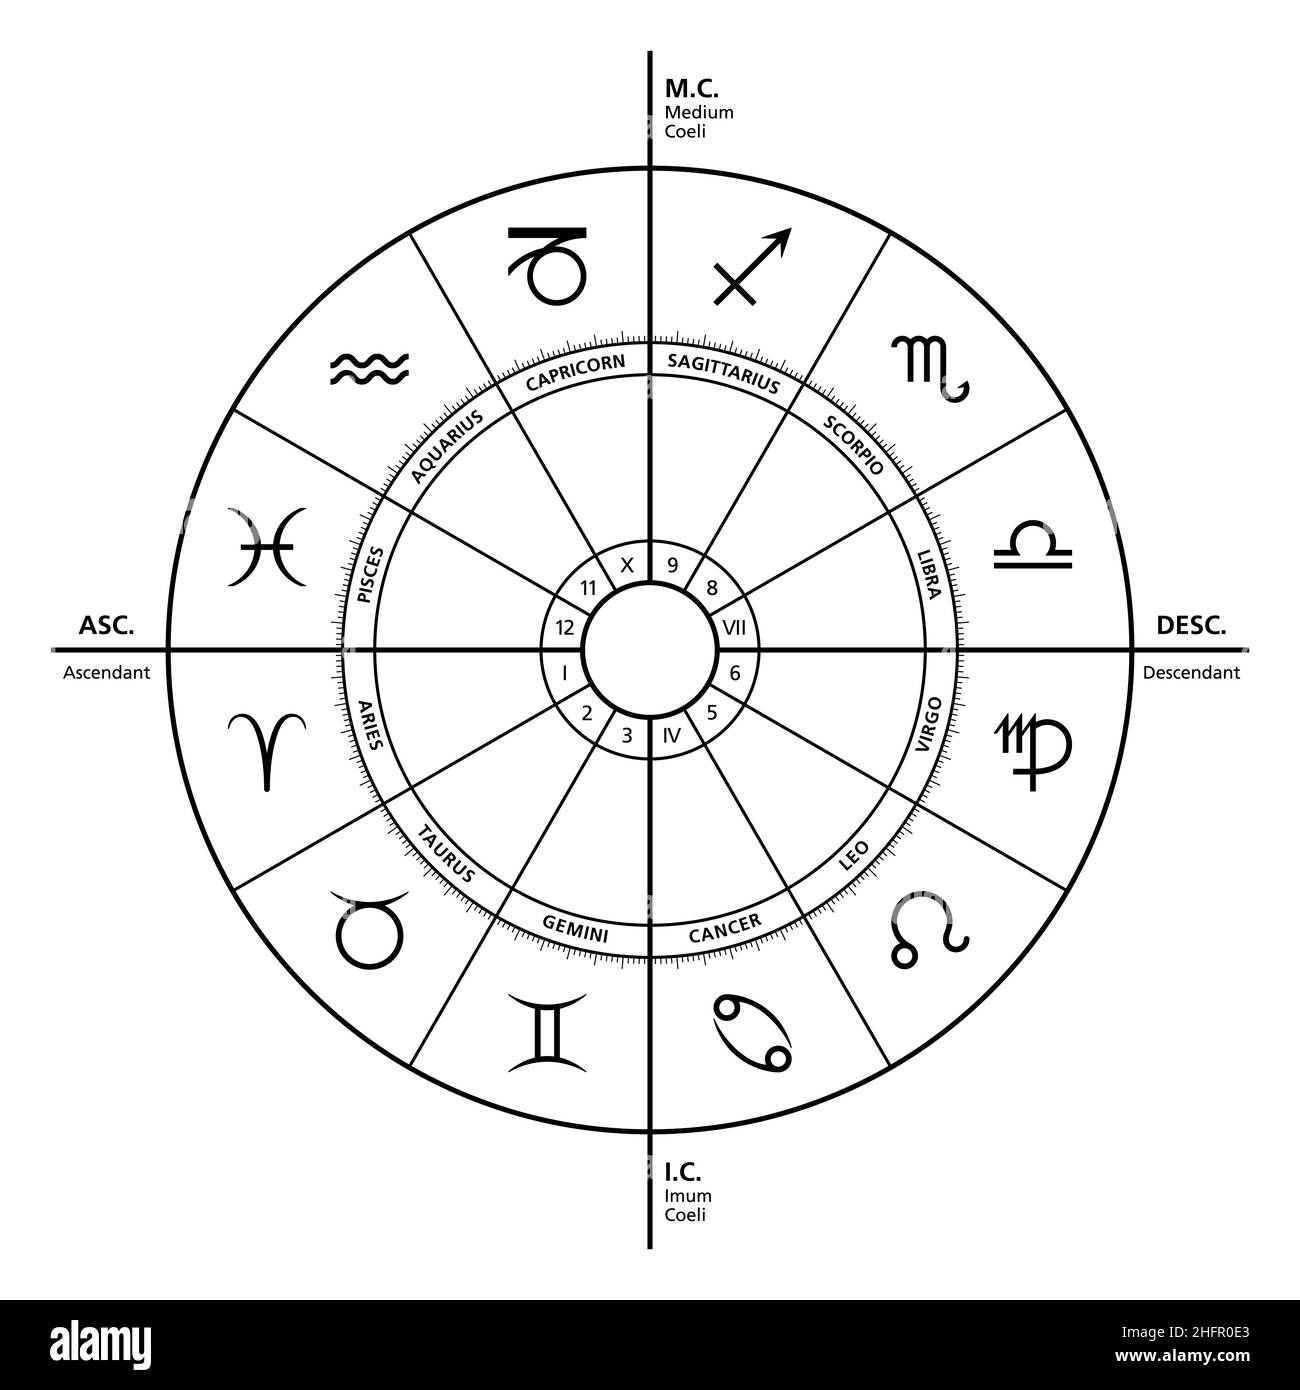 Die vier primären Winkel im Horoskop. Die mächtigsten Häuser sind Aszendent, Medium Coeli, Nachkomme und Imum Coeli. Astrologisches Diagramm. Stockfoto